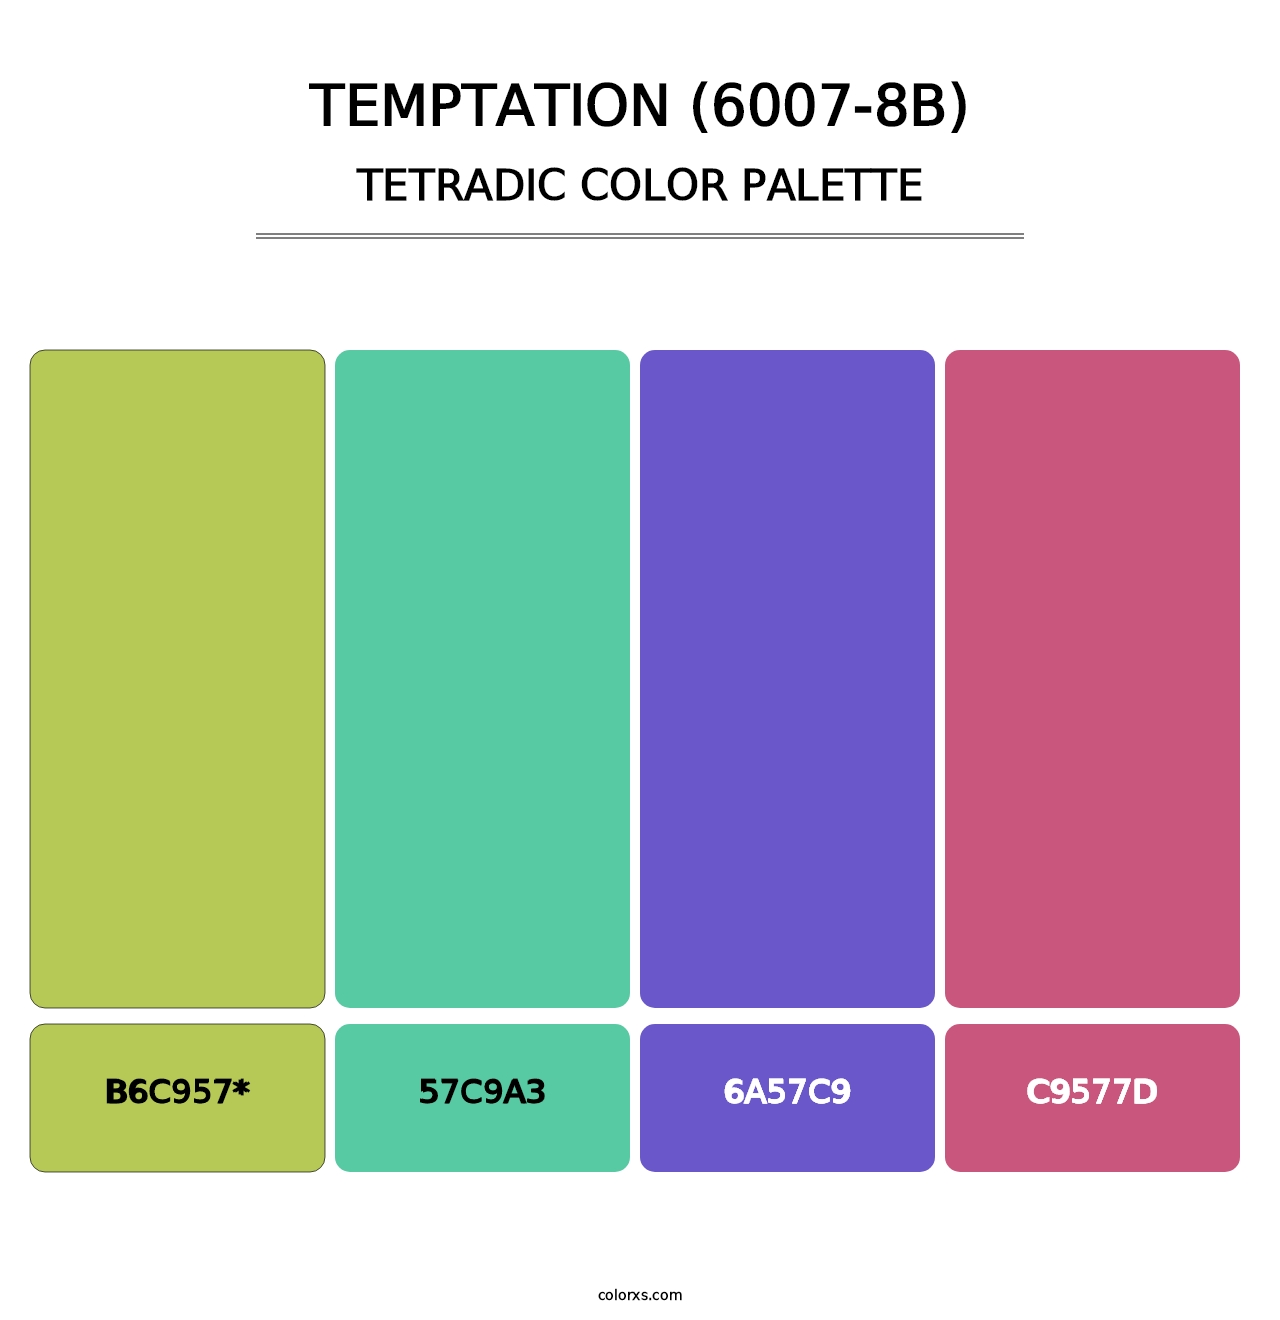 Temptation (6007-8B) - Tetradic Color Palette